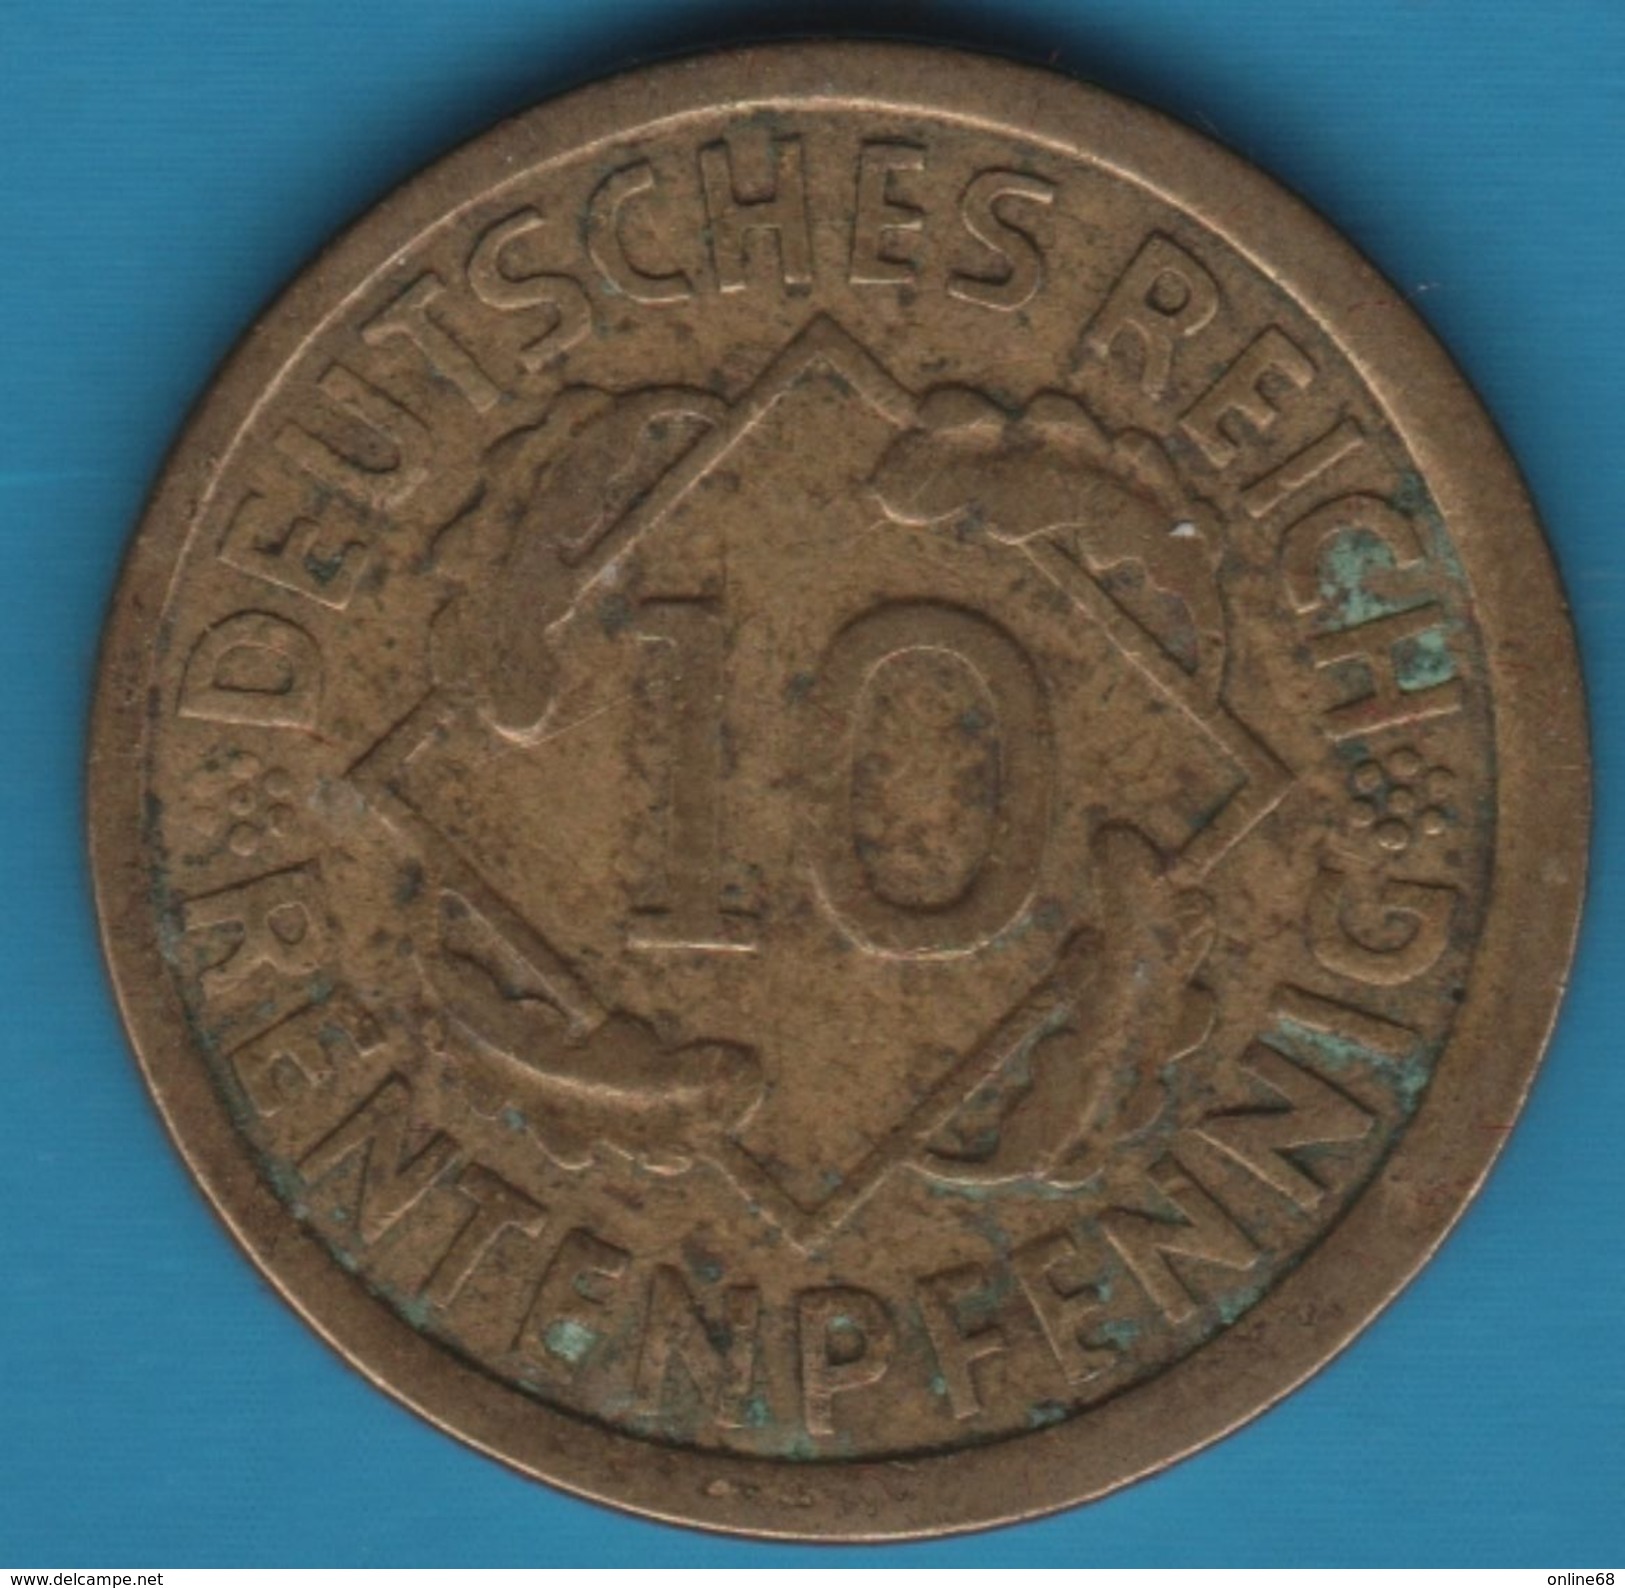 DEUTSCHES REICH 10 RENTENPFENNIG 1924 G - 10 Rentenpfennig & 10 Reichspfennig